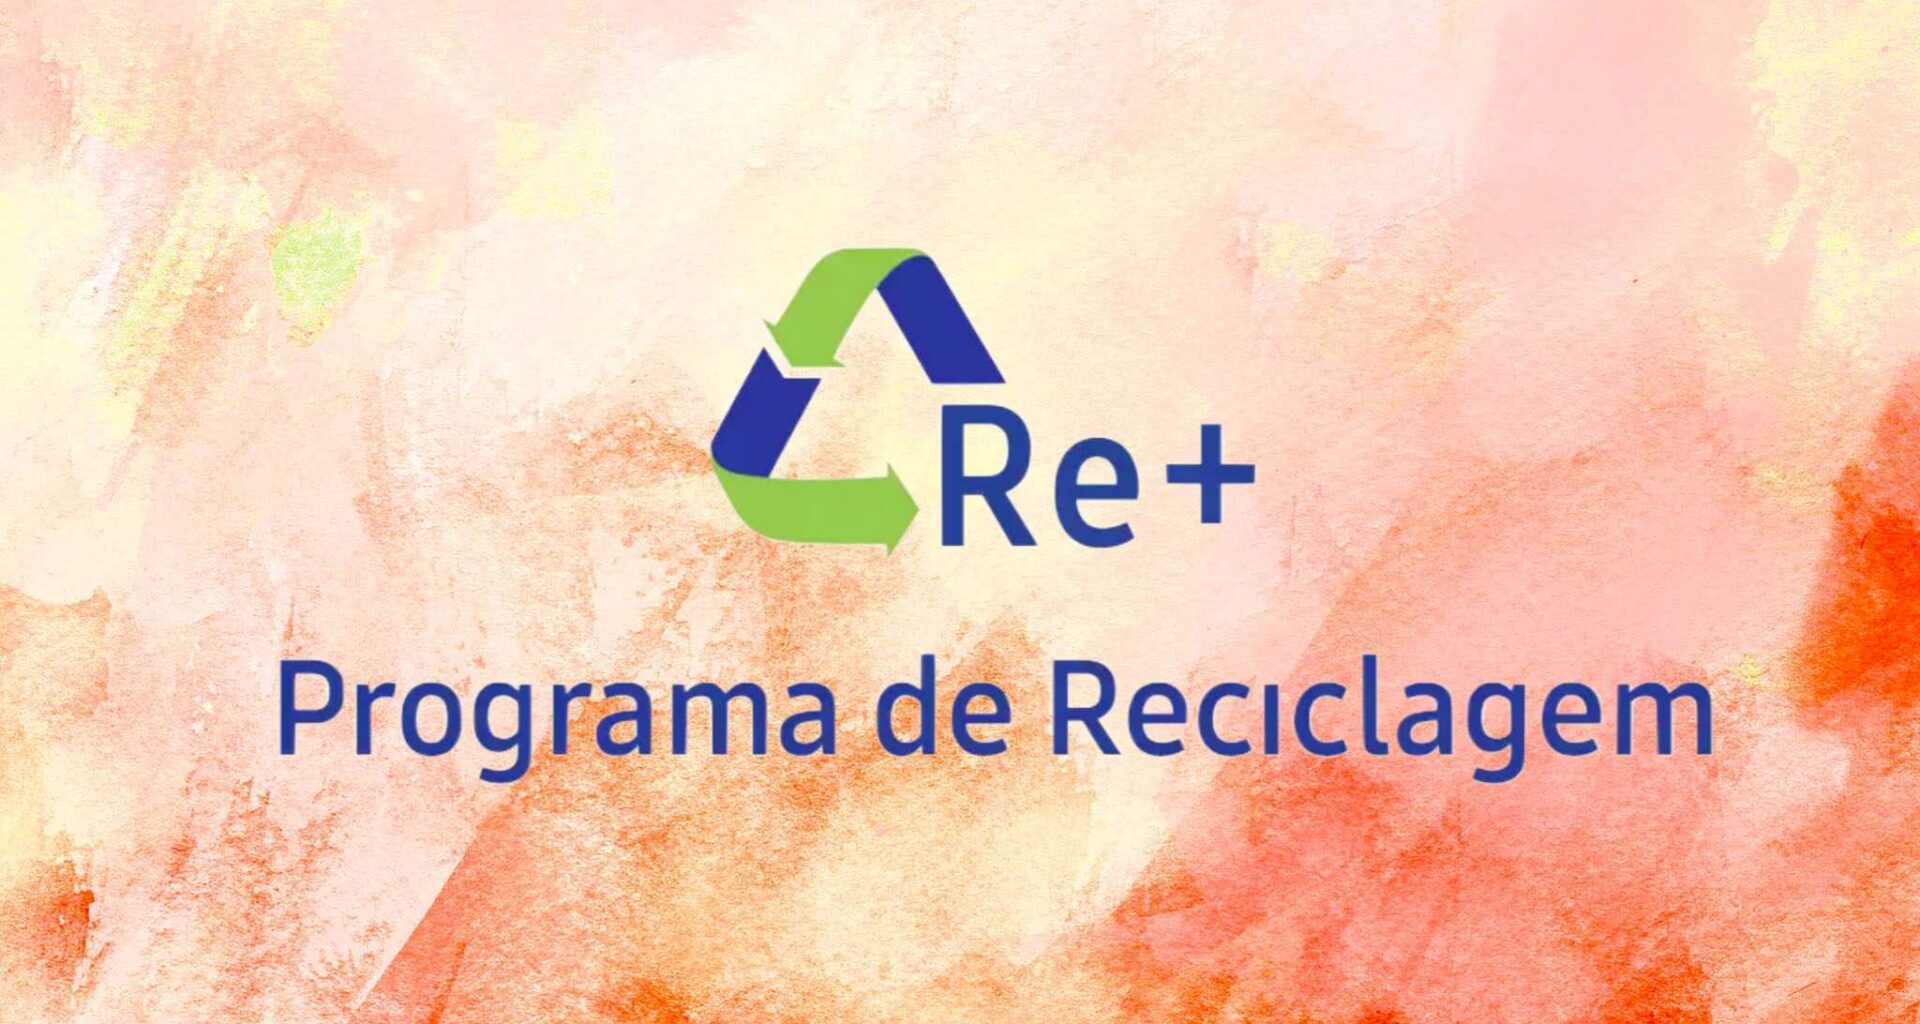 Programa de reciclagem re+ da samsung